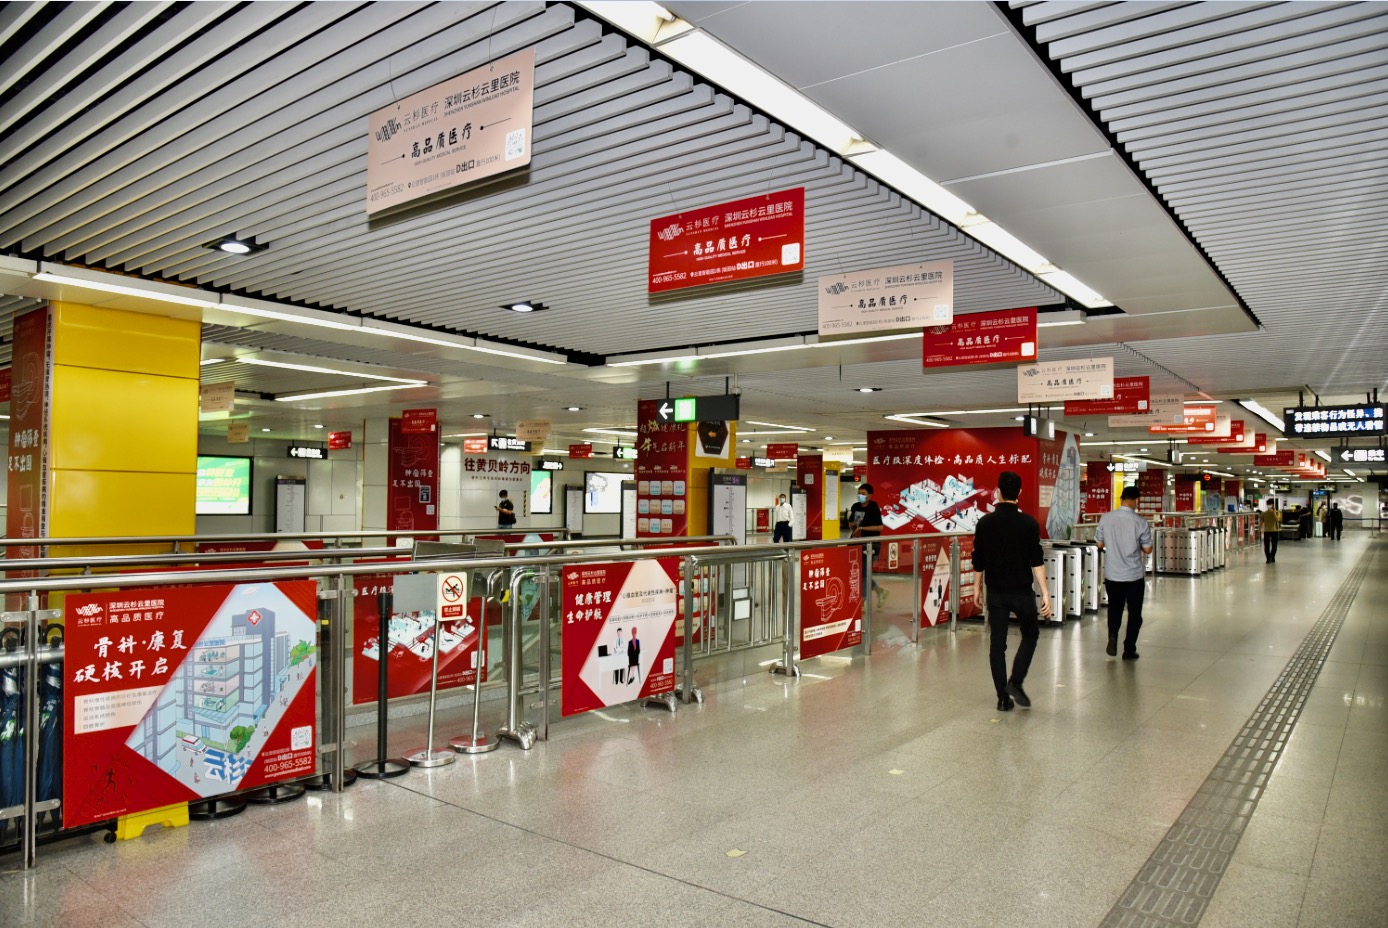 深圳地铁广告介绍地铁广告投放的设计原则